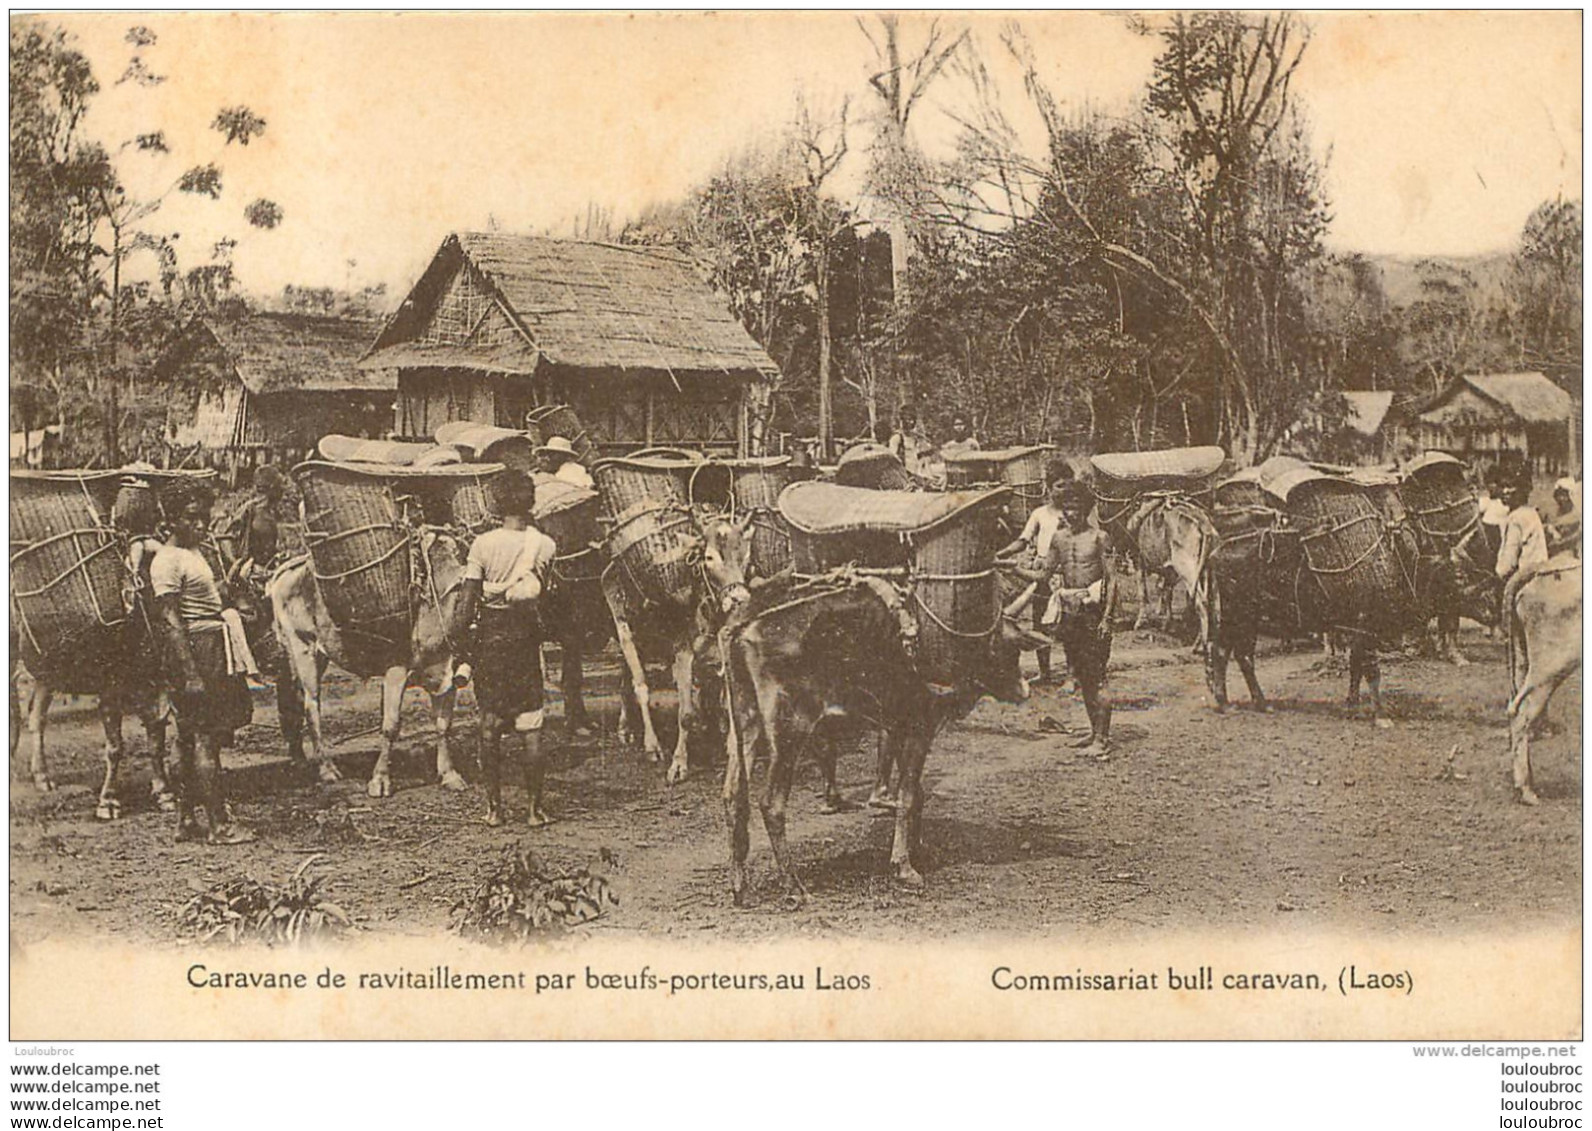 LAOS CARAVANE DE RAVITAILLEMENT PAR BOEUFS PORTEURS - Laos